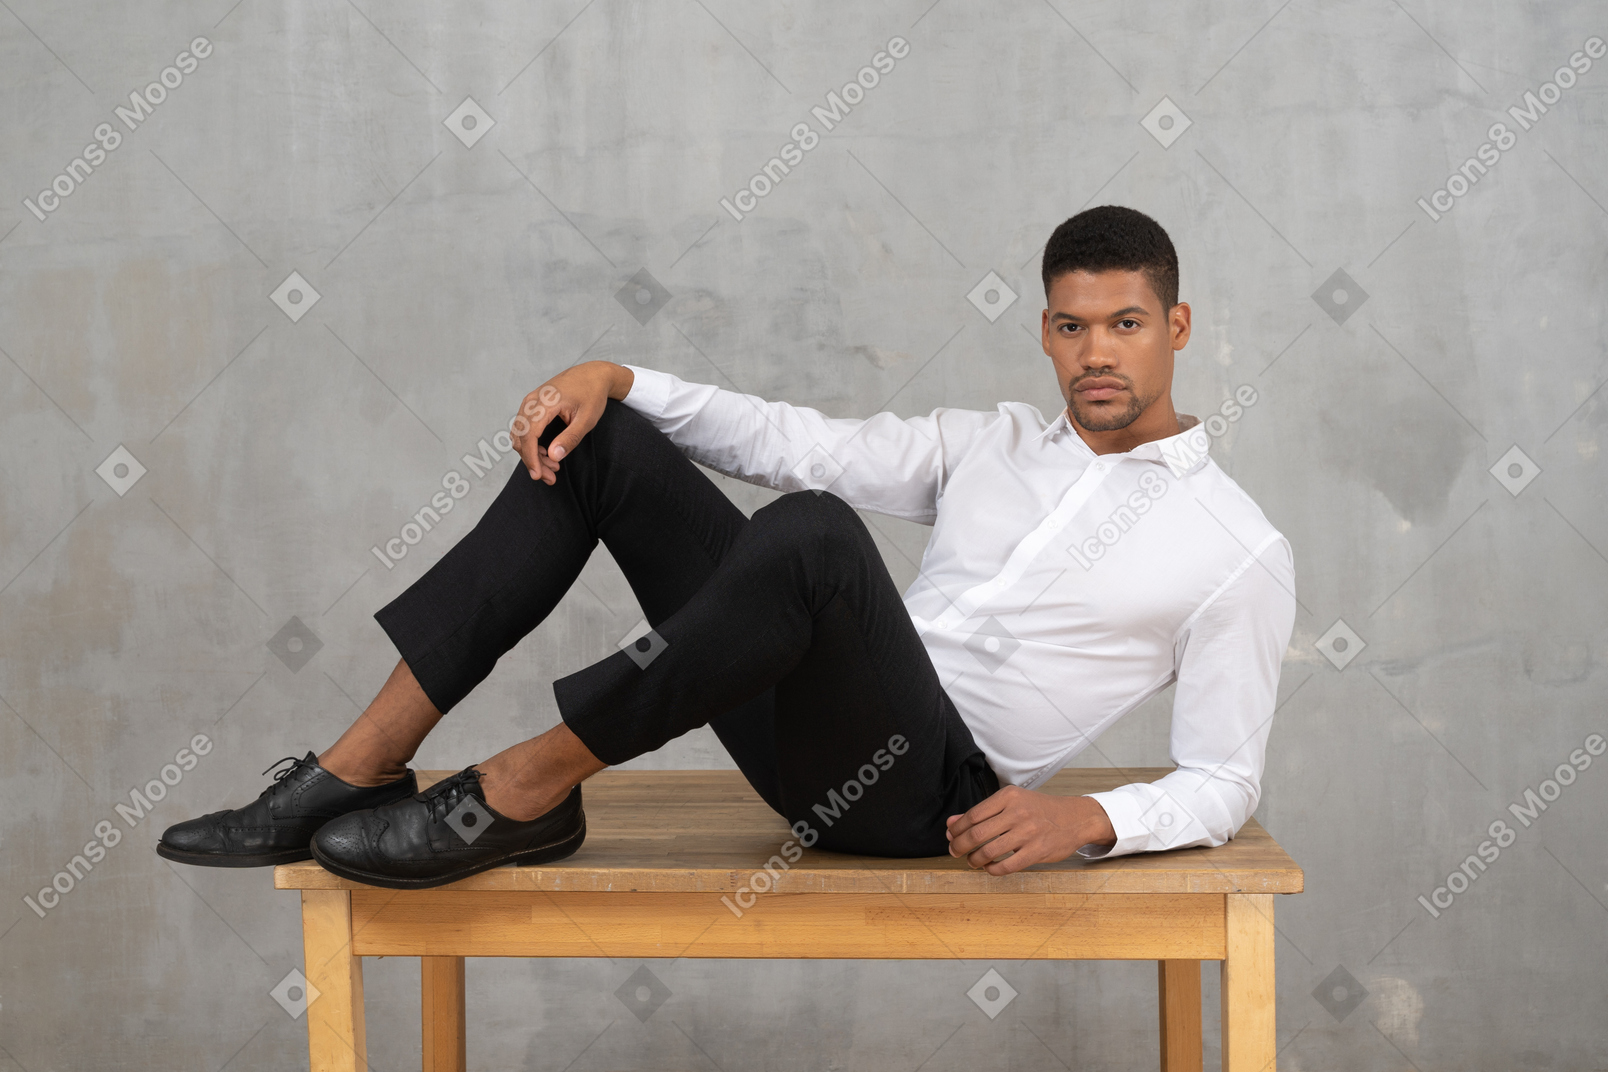 Mann in formeller kleidung, der auf einem tisch liegt